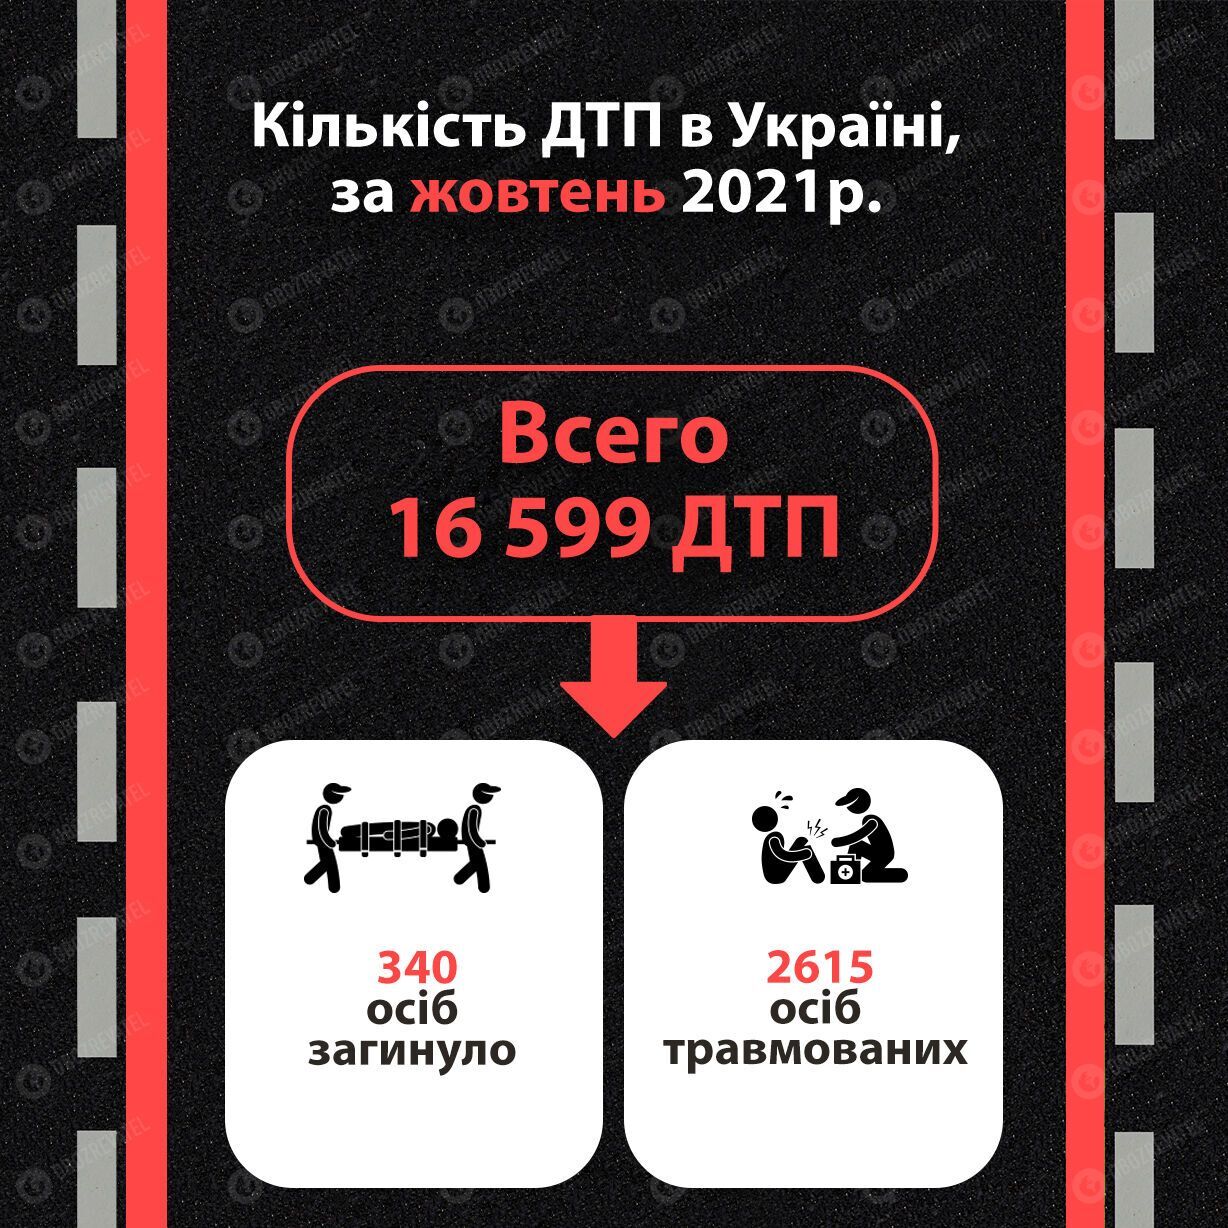 Статистика ДТП в Україні за місяць